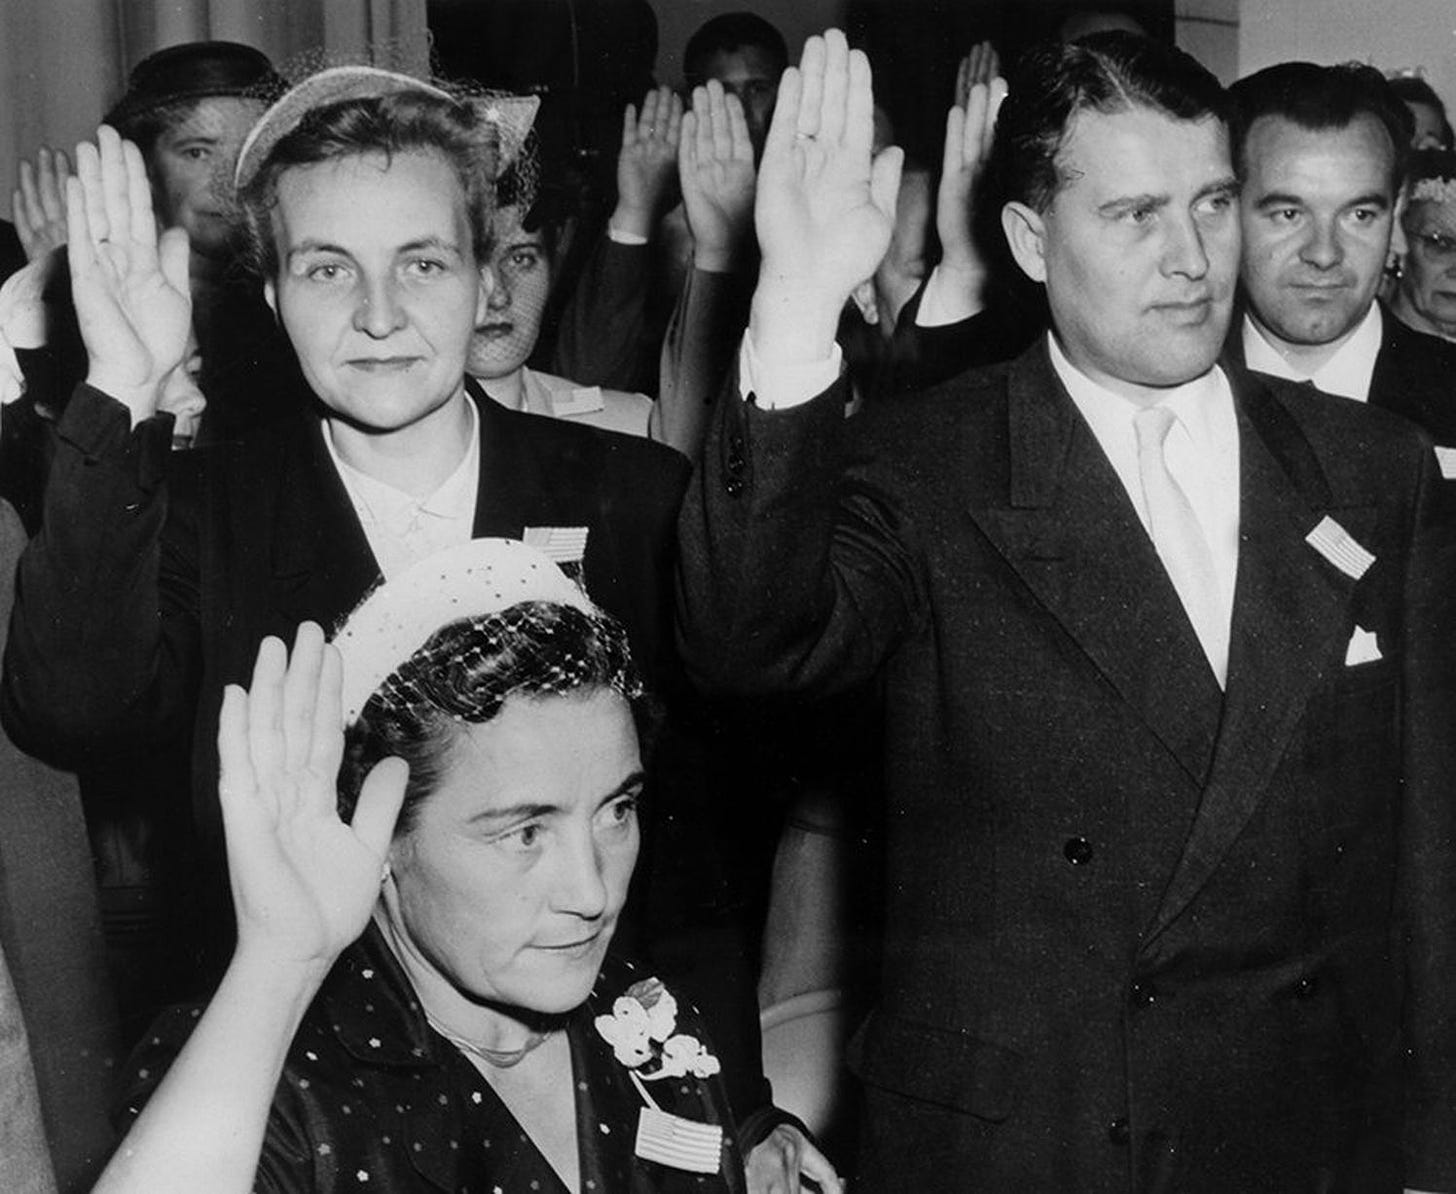 Former Nazi scientist Werner von Braun is sworn in as a US citizen